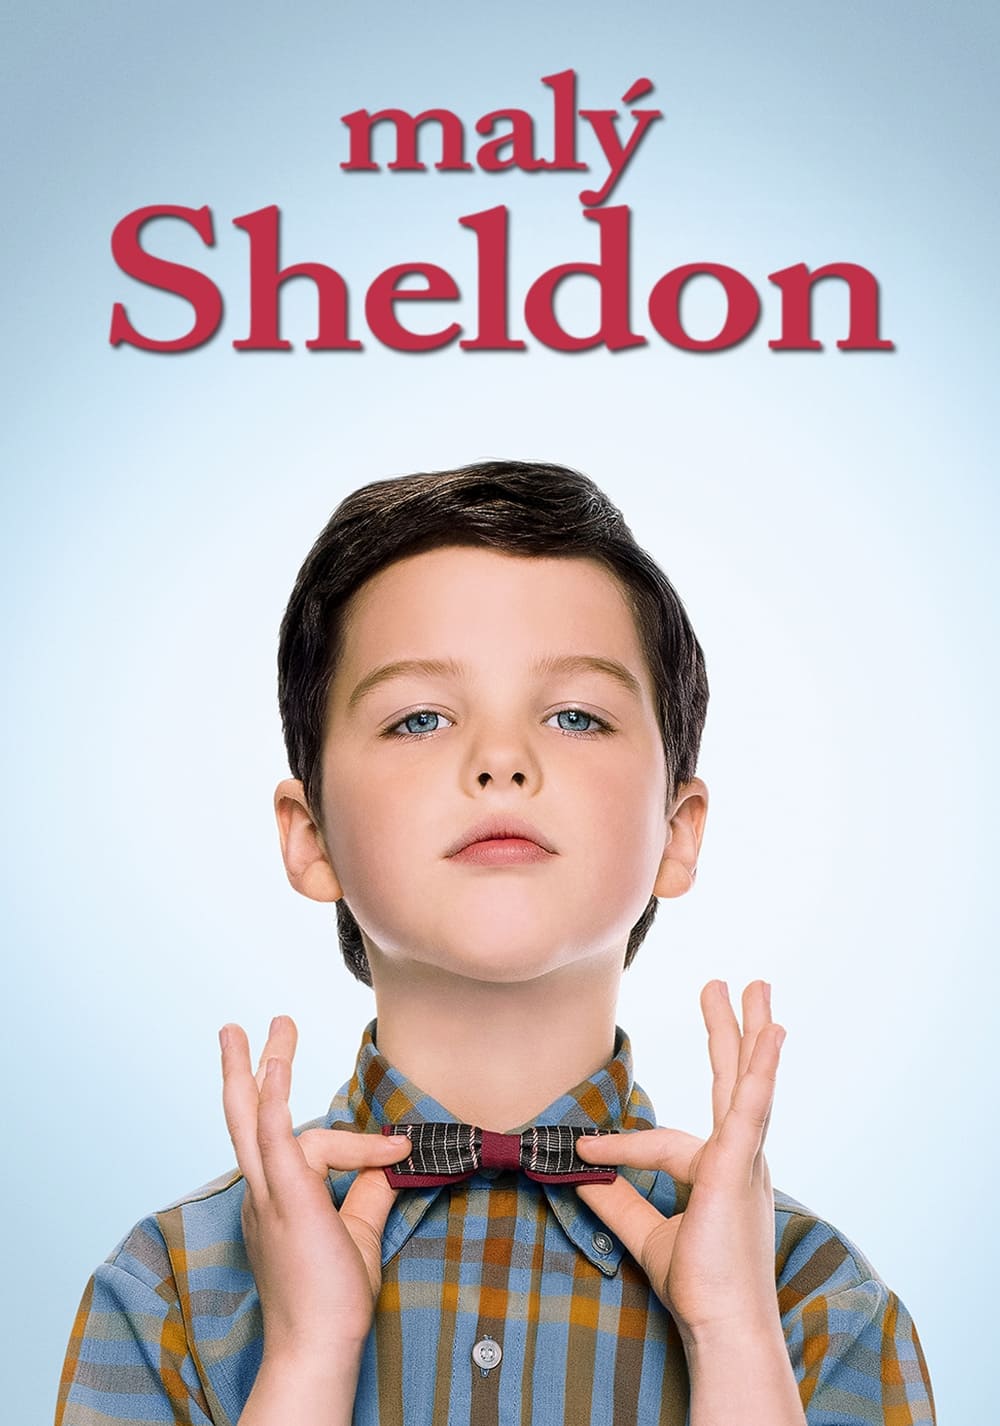 Plakát pro film “Malý Sheldon”